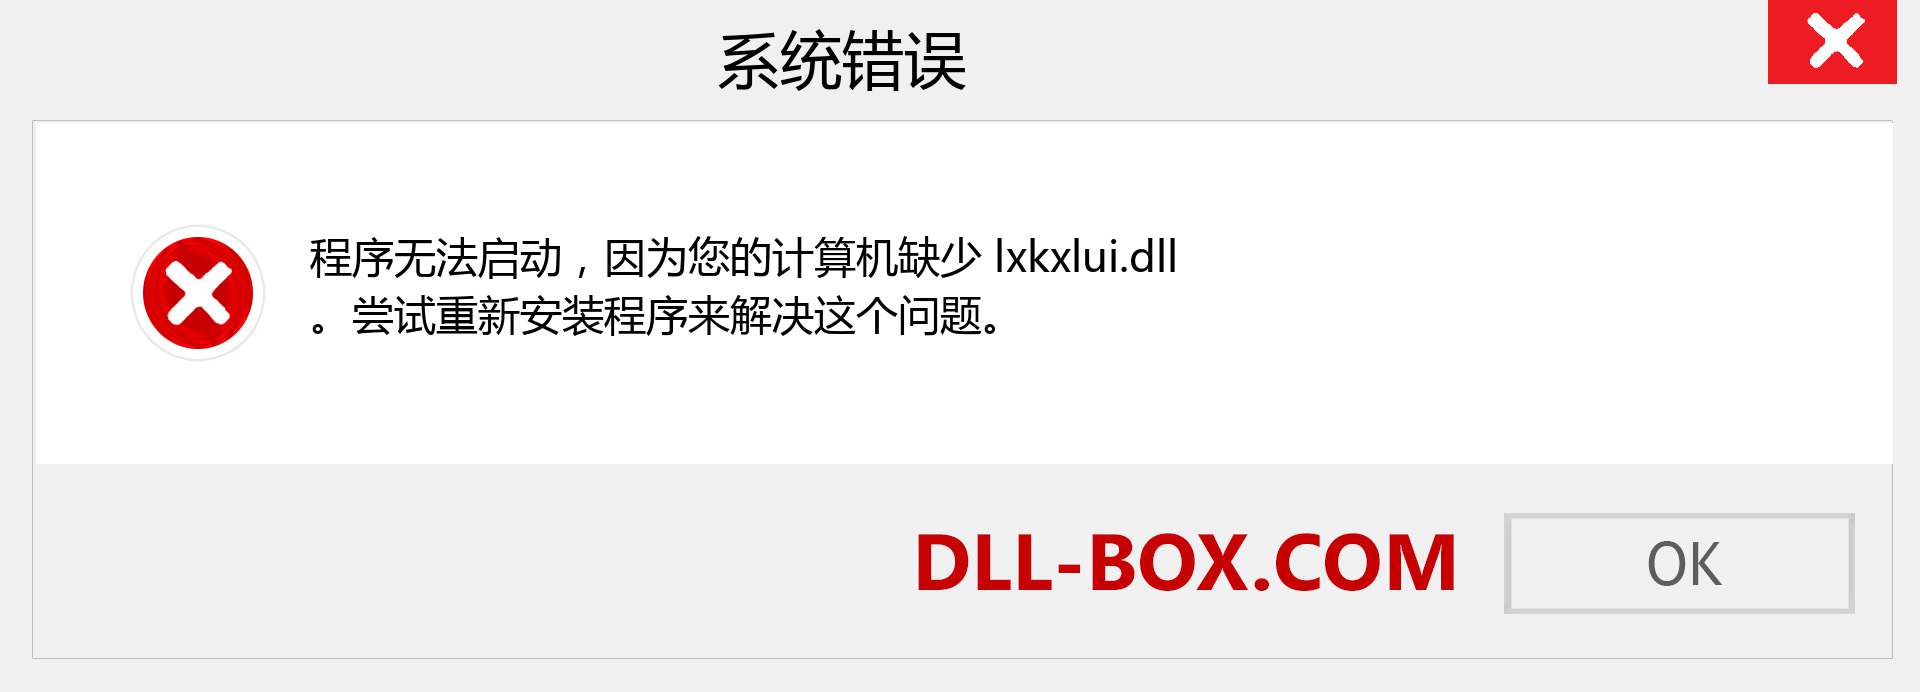 lxkxlui.dll 文件丢失？。 适用于 Windows 7、8、10 的下载 - 修复 Windows、照片、图像上的 lxkxlui dll 丢失错误